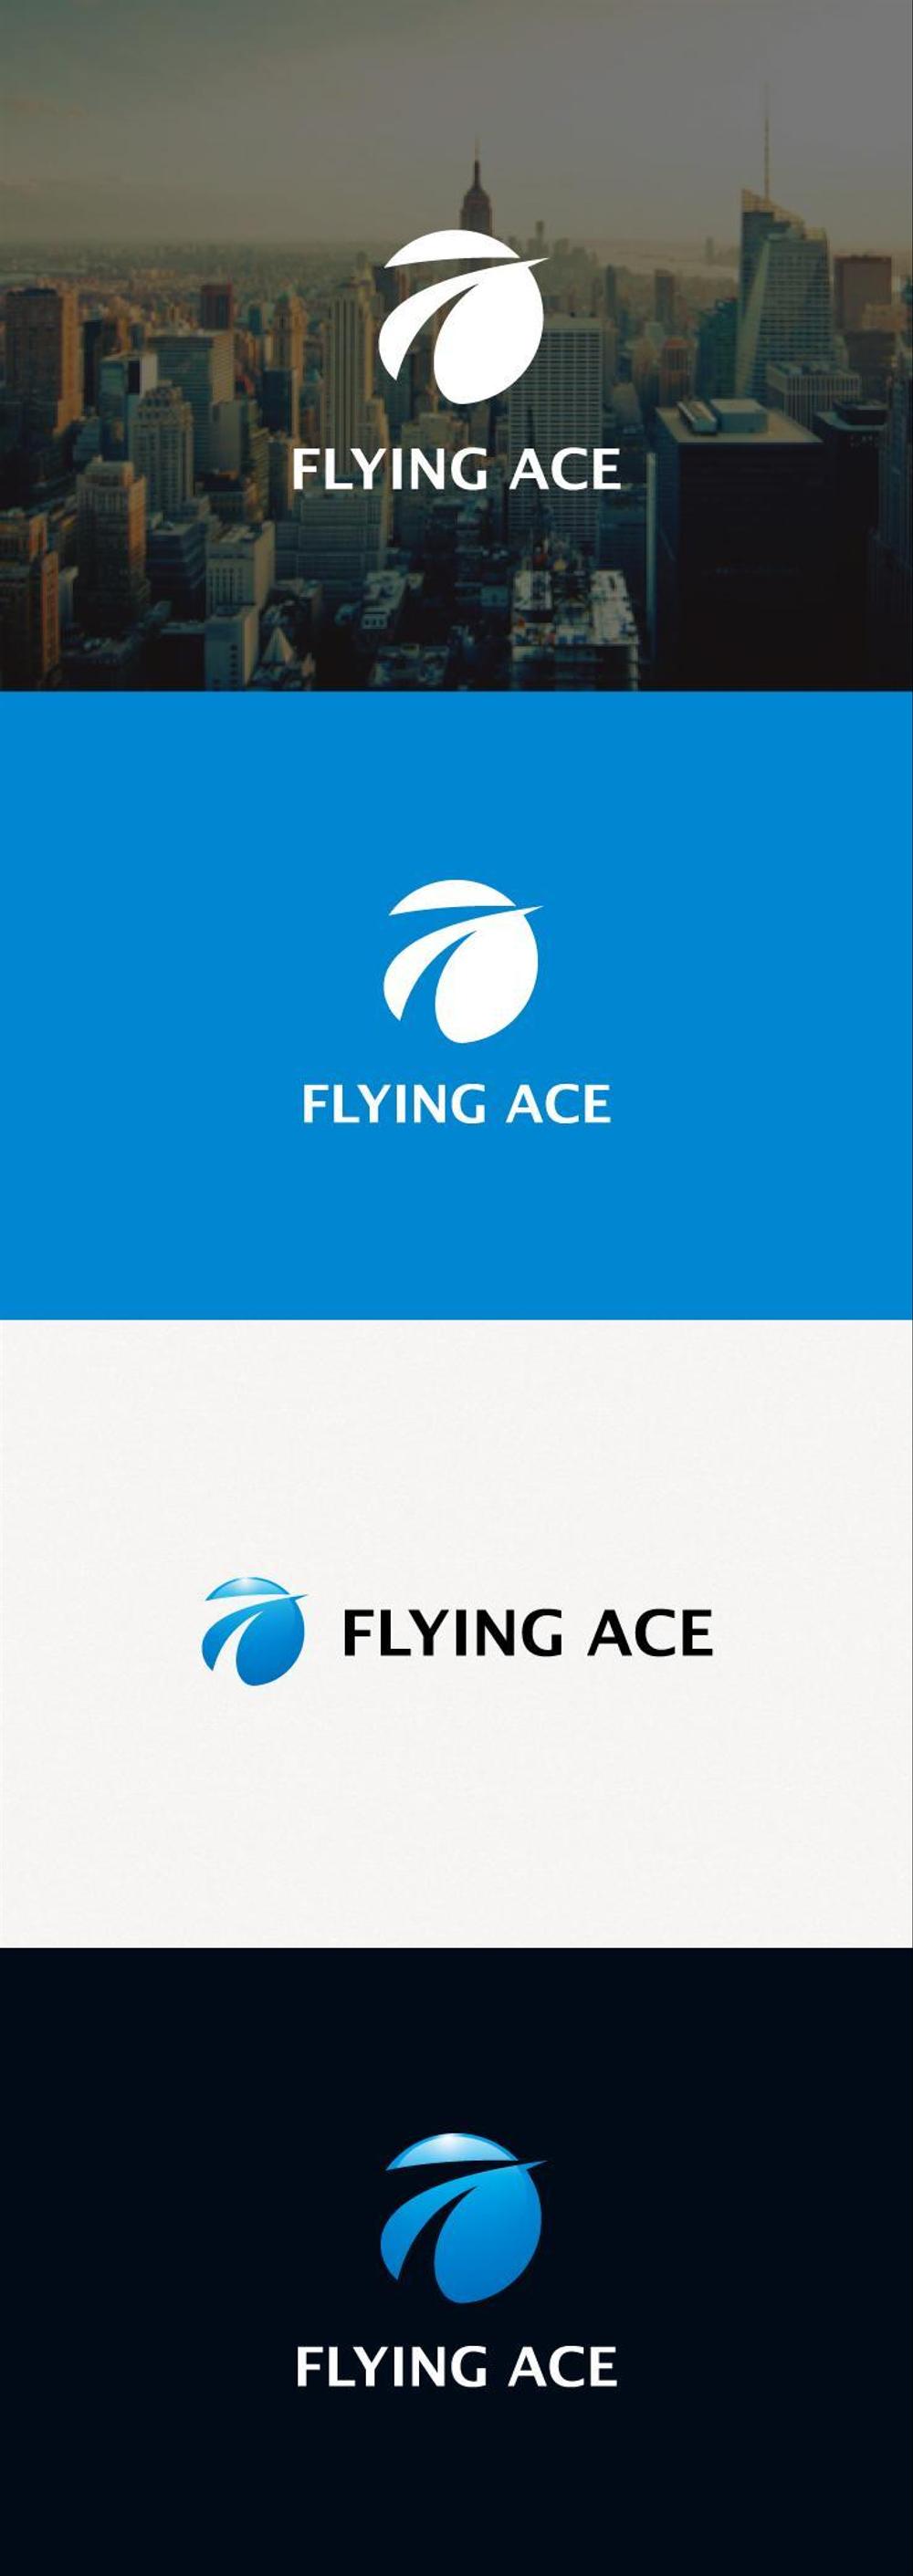 財務・金融コンサルティング、FP事務所「株式会社FLYING ACE」のロゴ